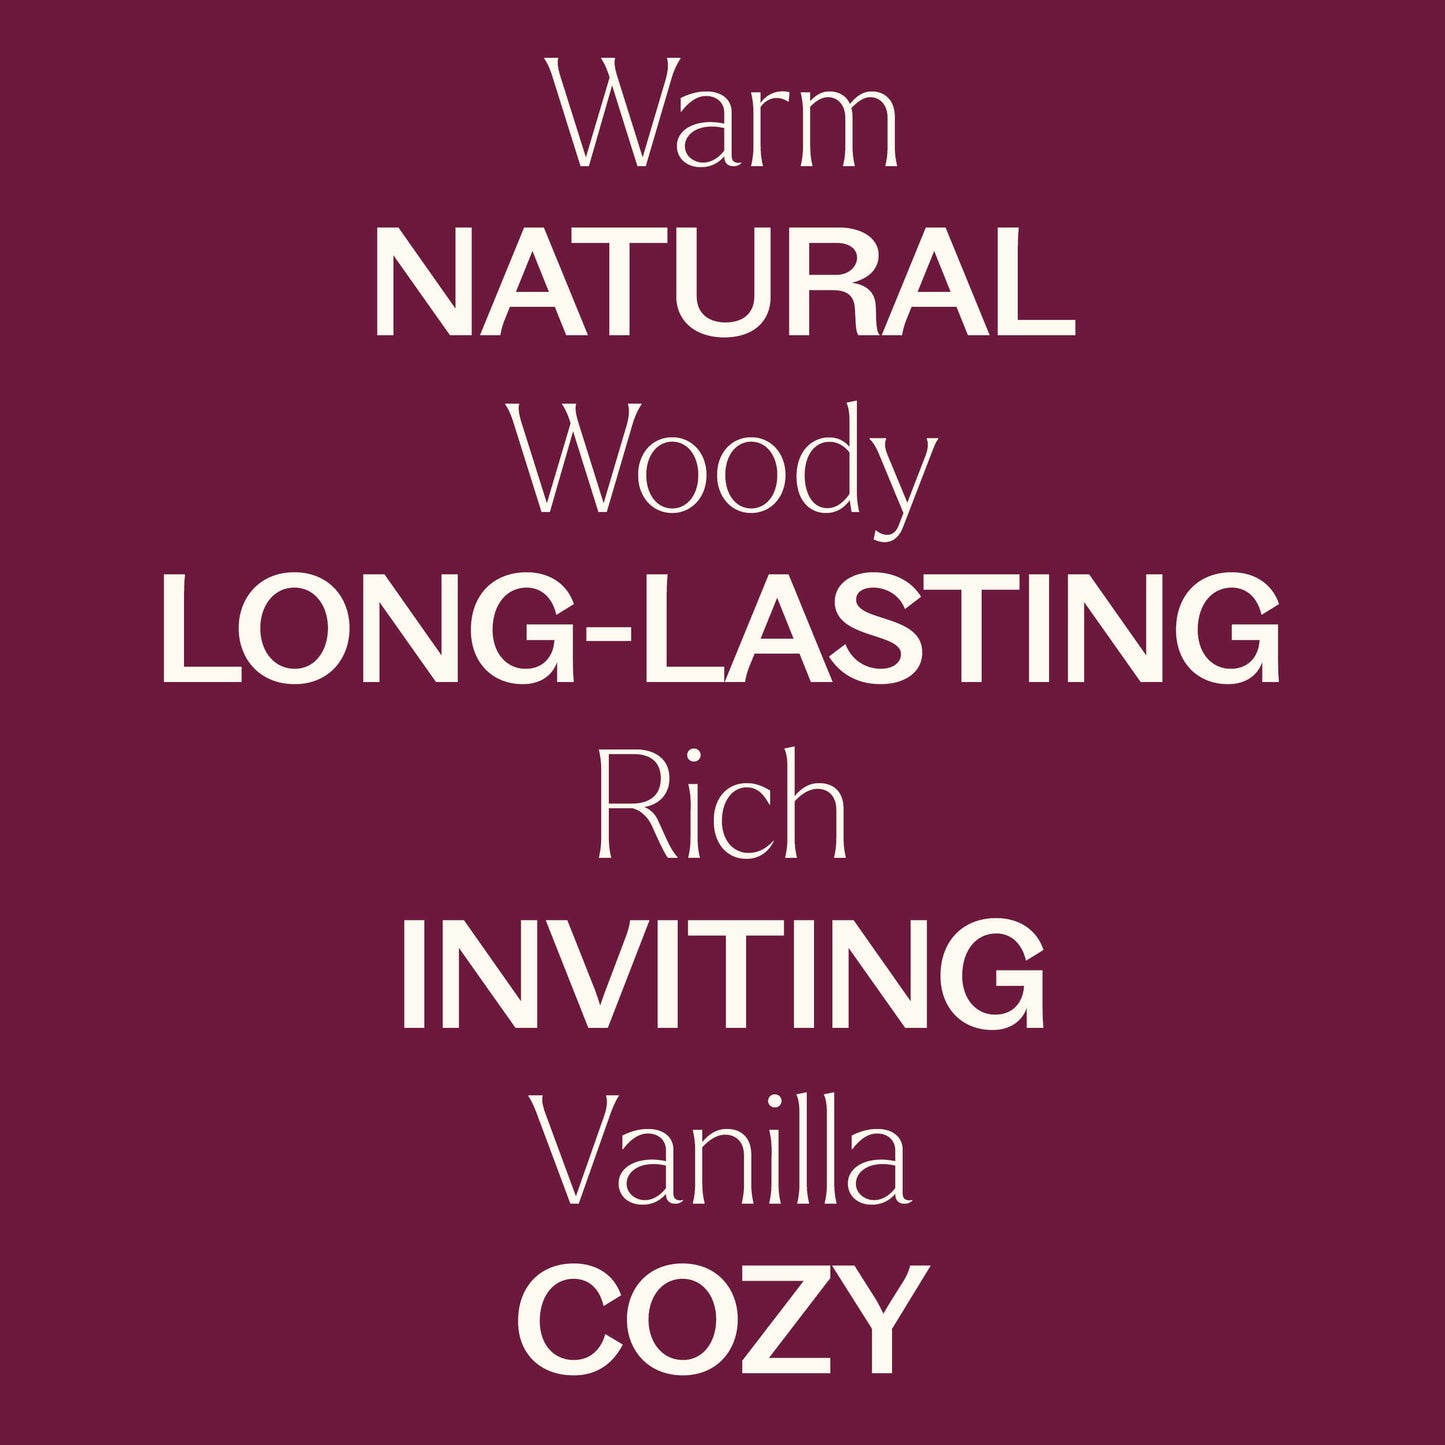 Warm, woody, rich, vanilla. Natural, long-lasting, inviting, cozy.